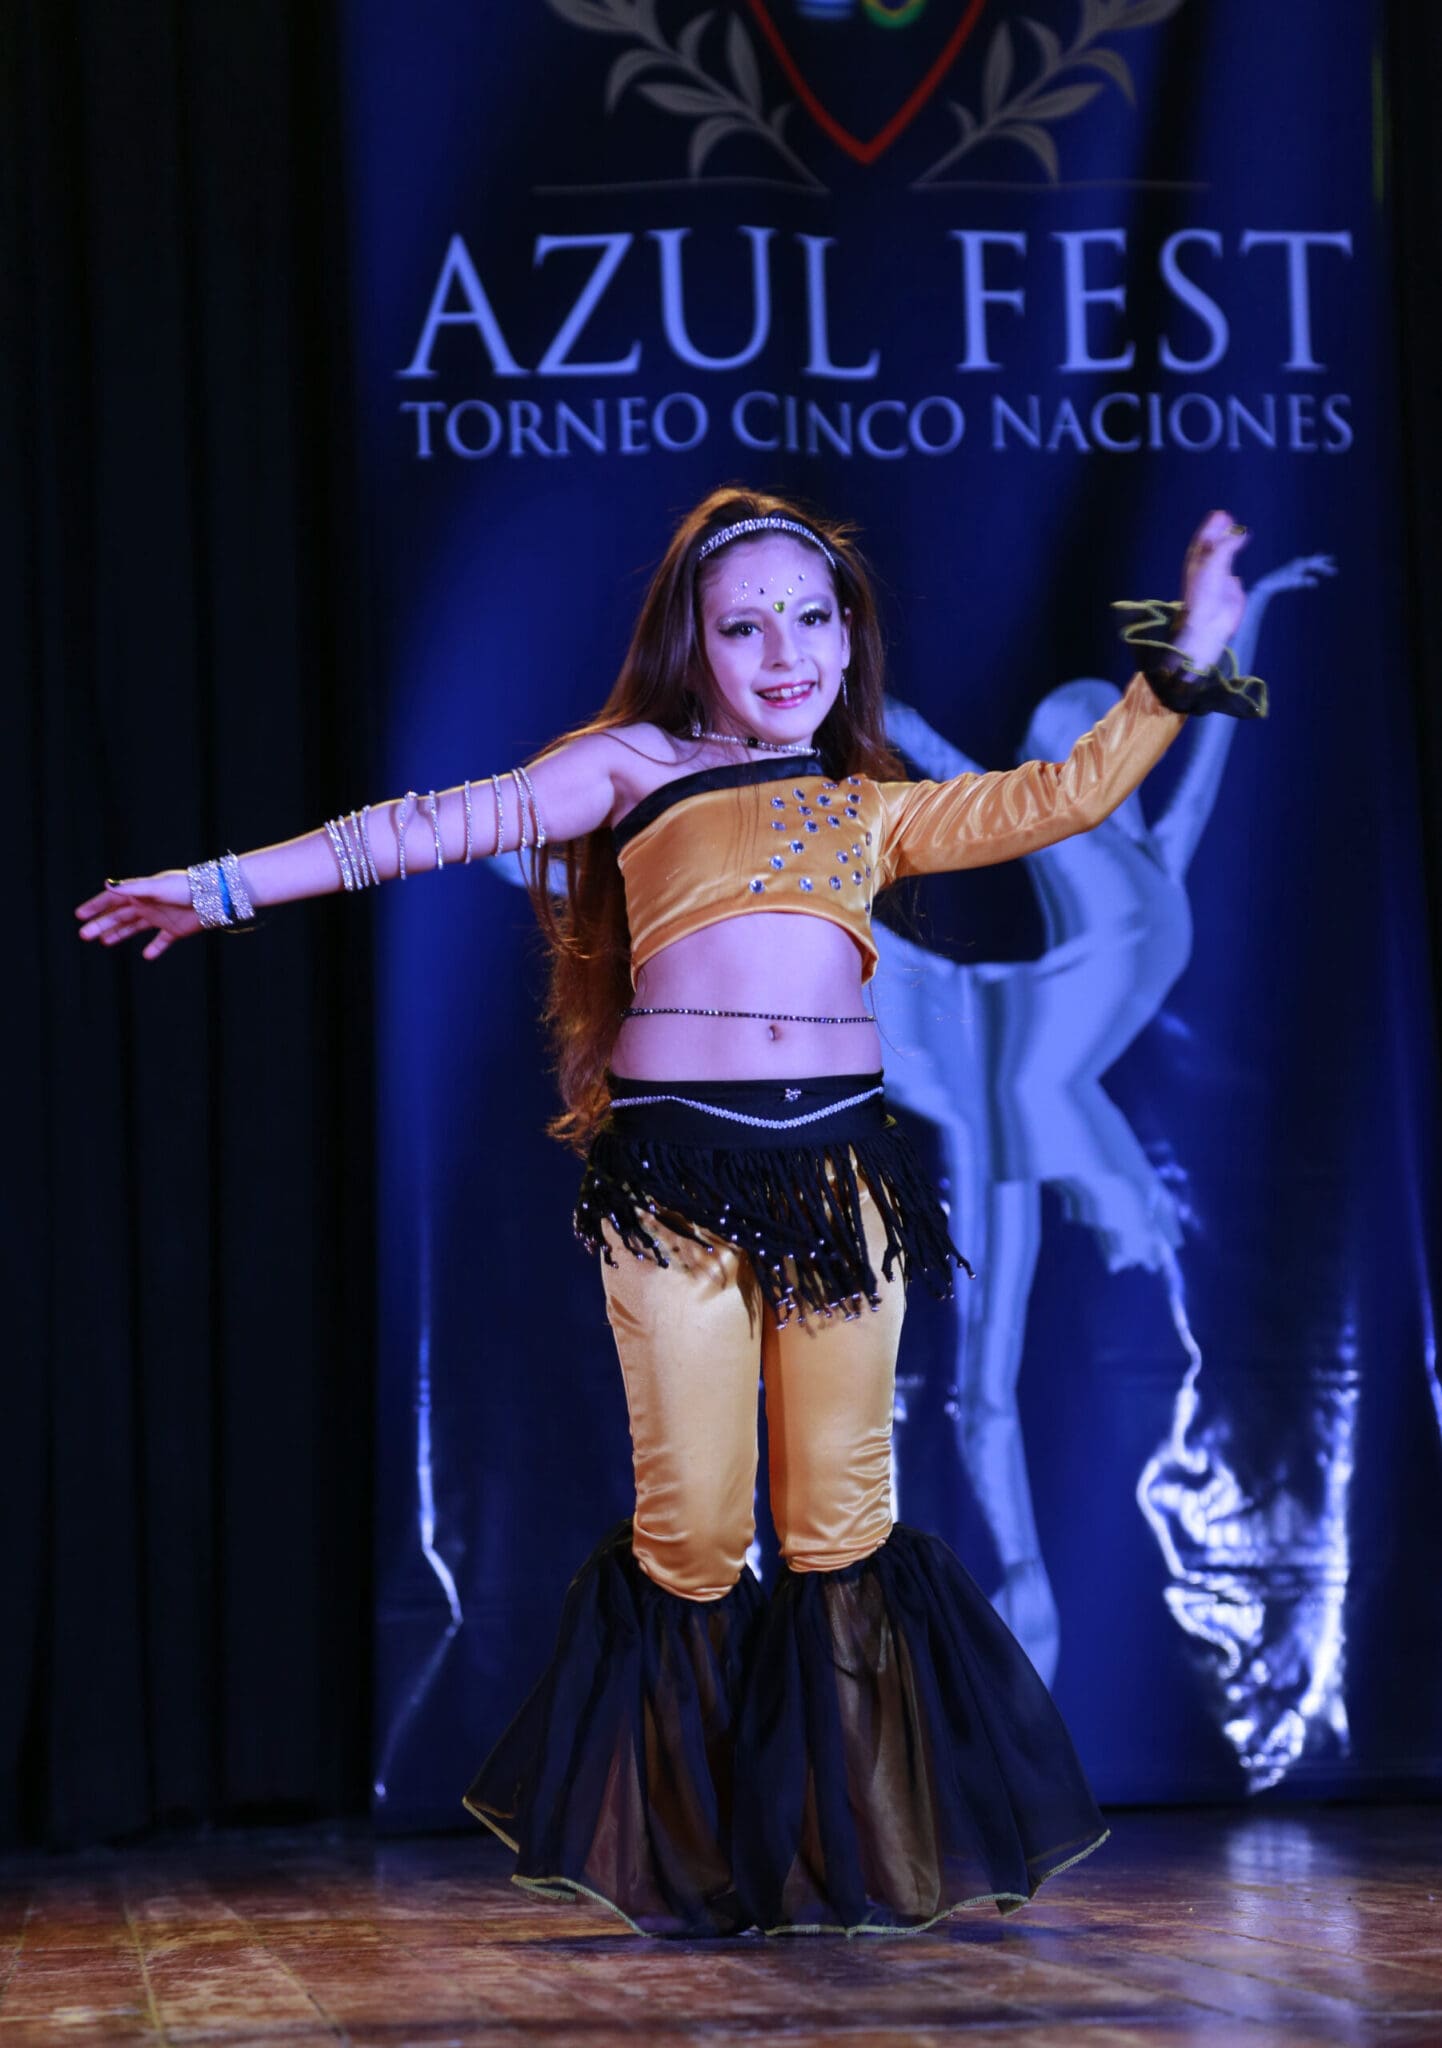 bailarina de danzas arabes en competencia de danzas torneo cinco naciones azul fest